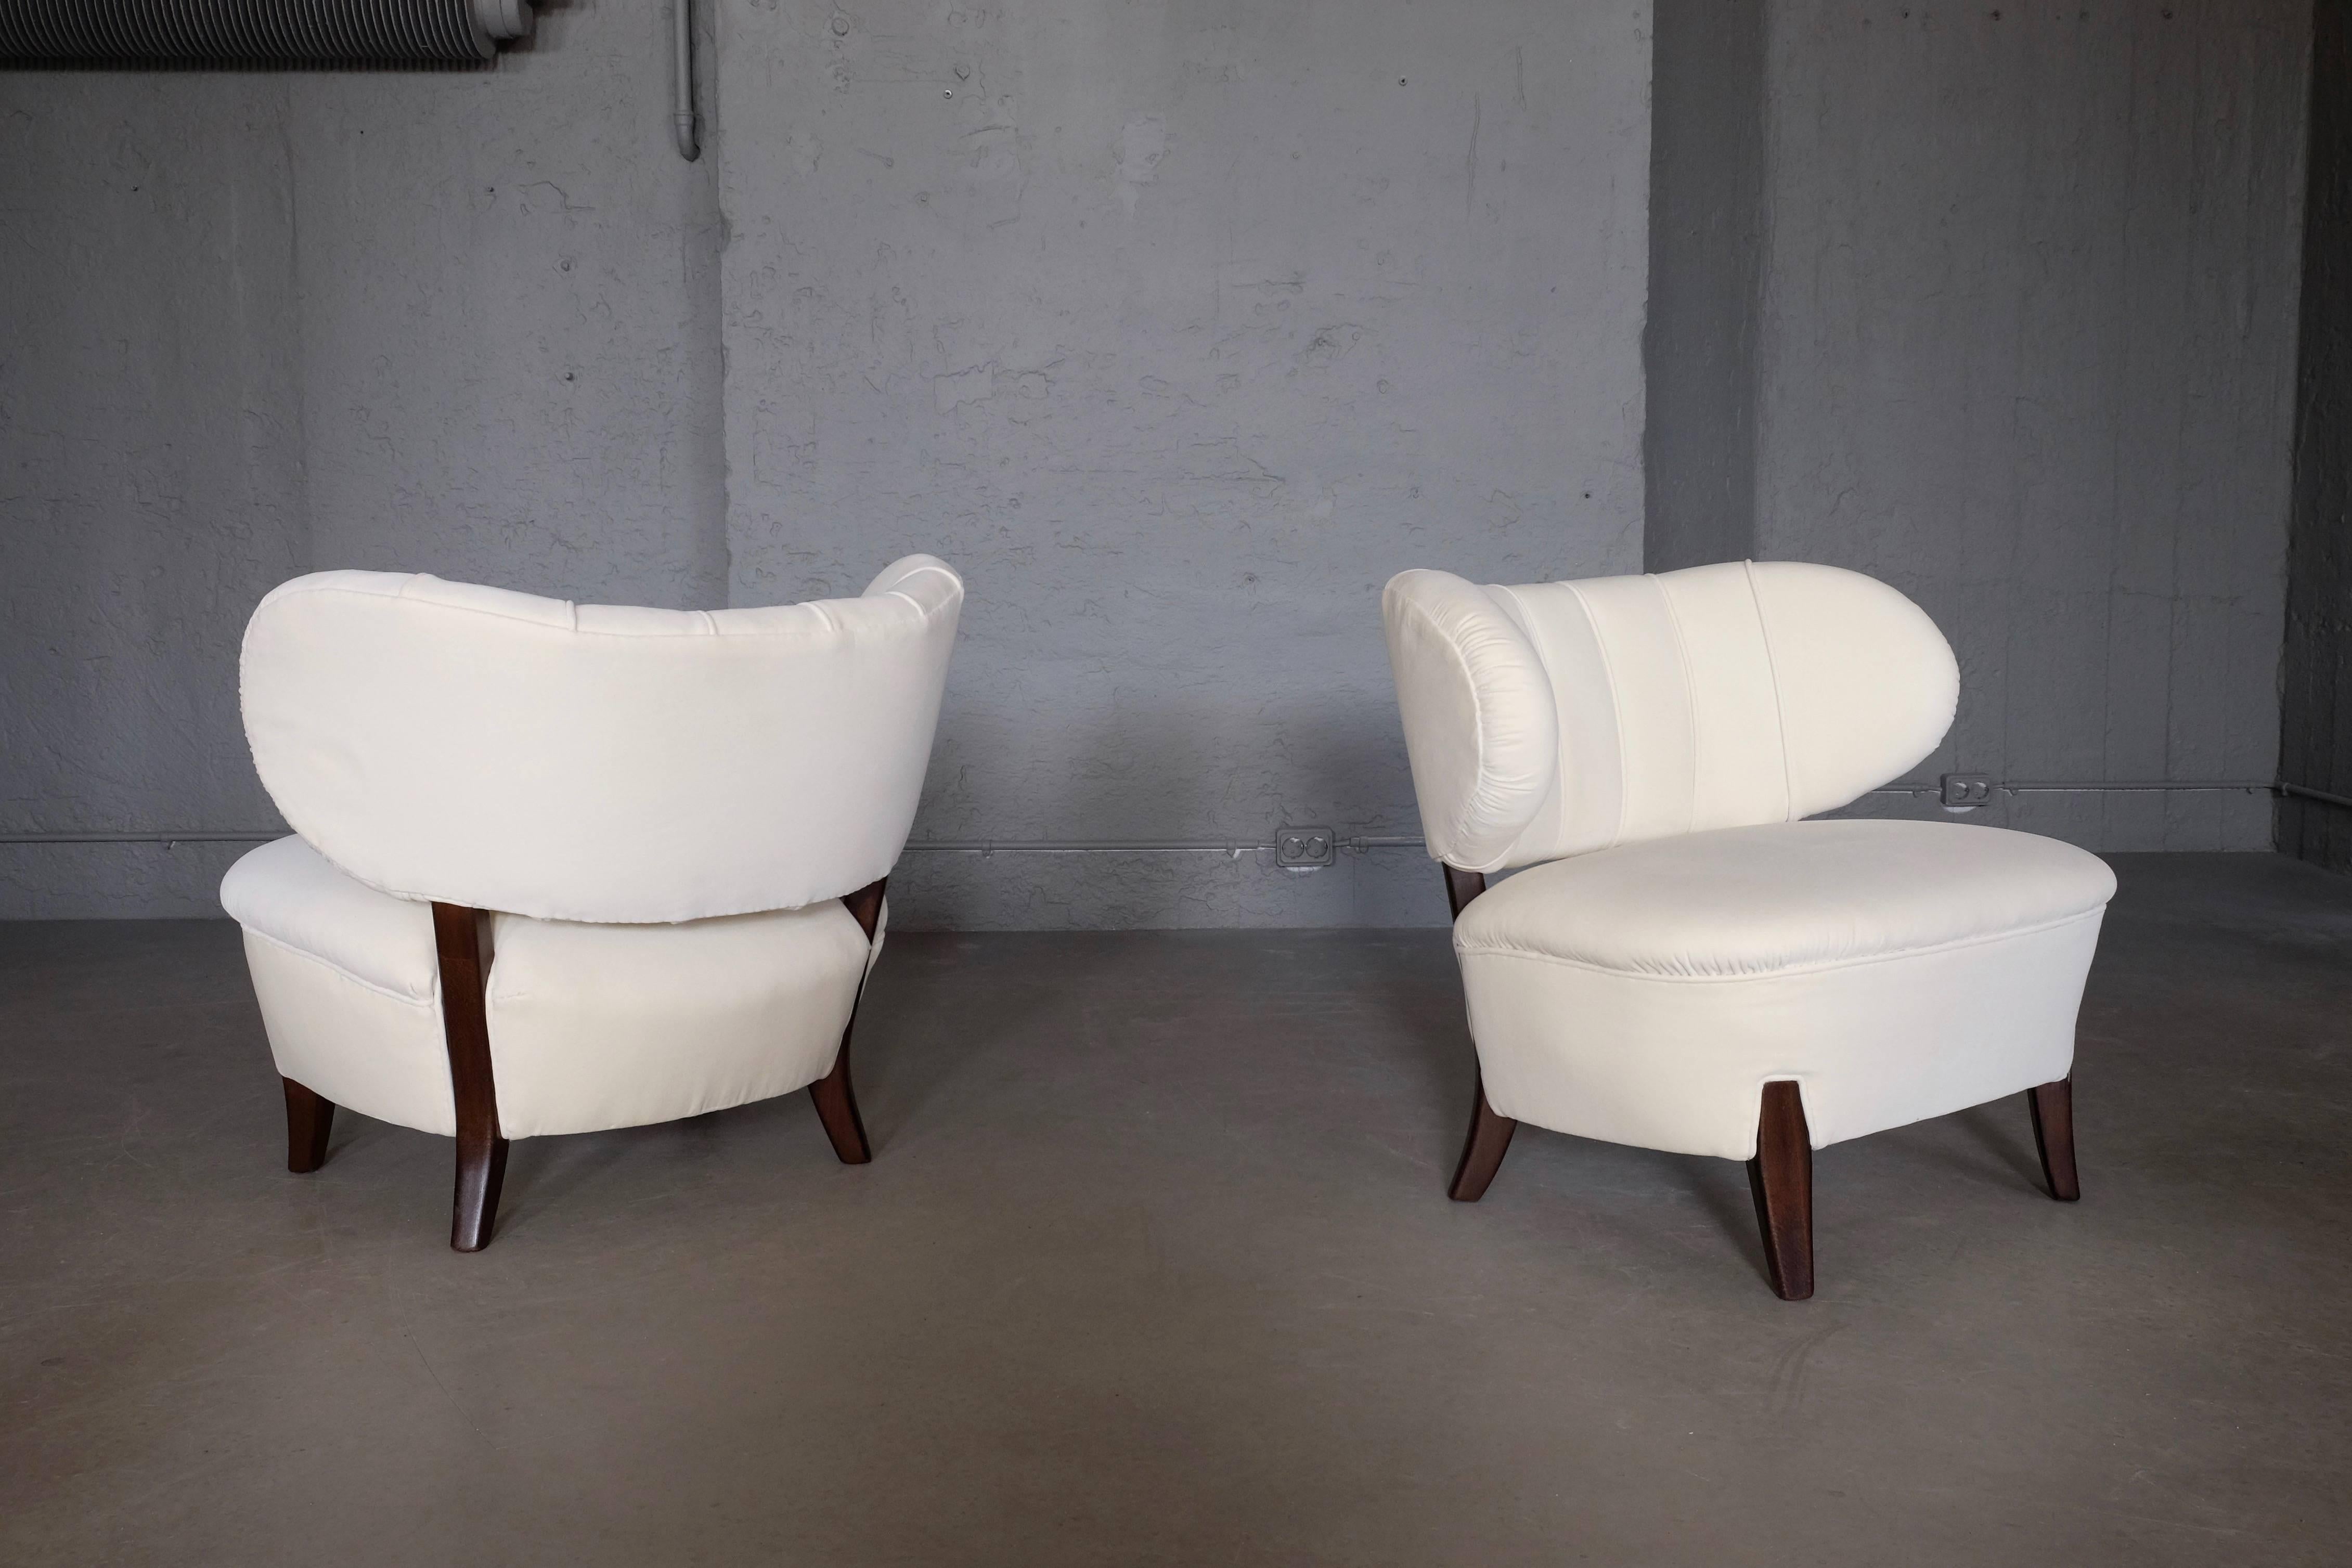 Charmants fauteuils en velours blanc ivoire d'Otto Schulz, Boet, Suède, années 1930.
Rembourré et restauré, excellent état.
Expédition mondiale : 499 USD.
    